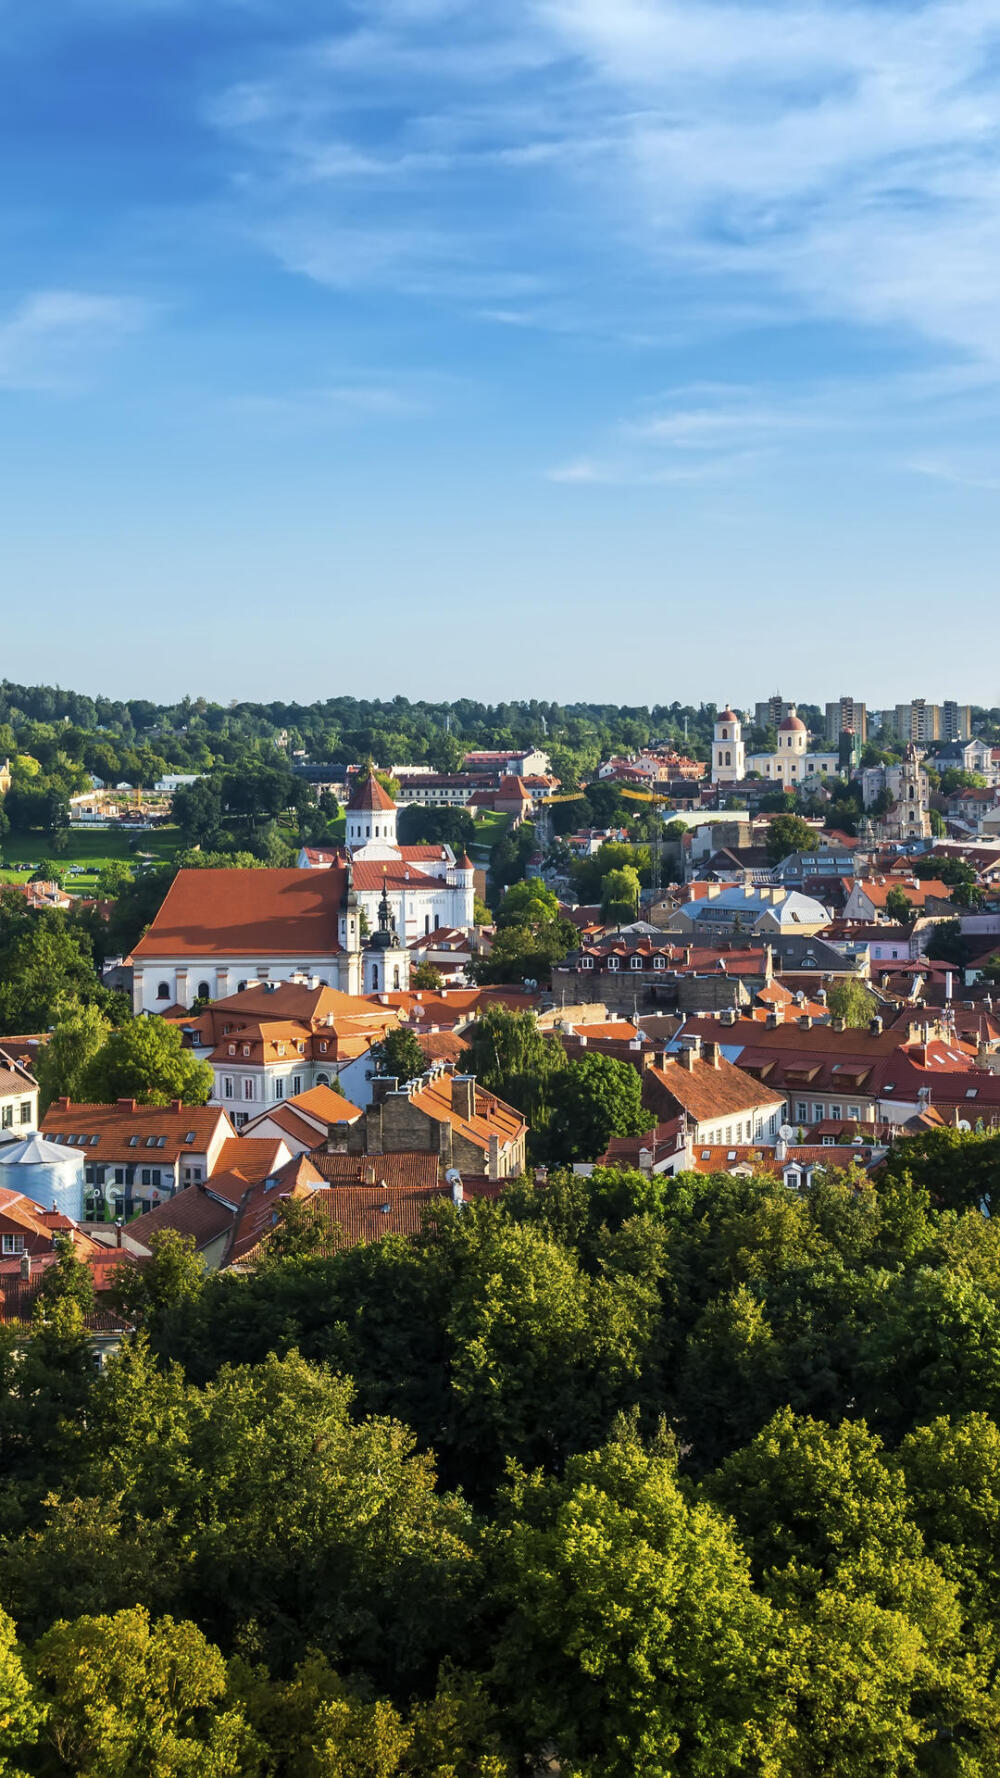 维尔纽斯立陶宛的首都和最大城市,被誉为欧洲最大的巴洛克风格古城